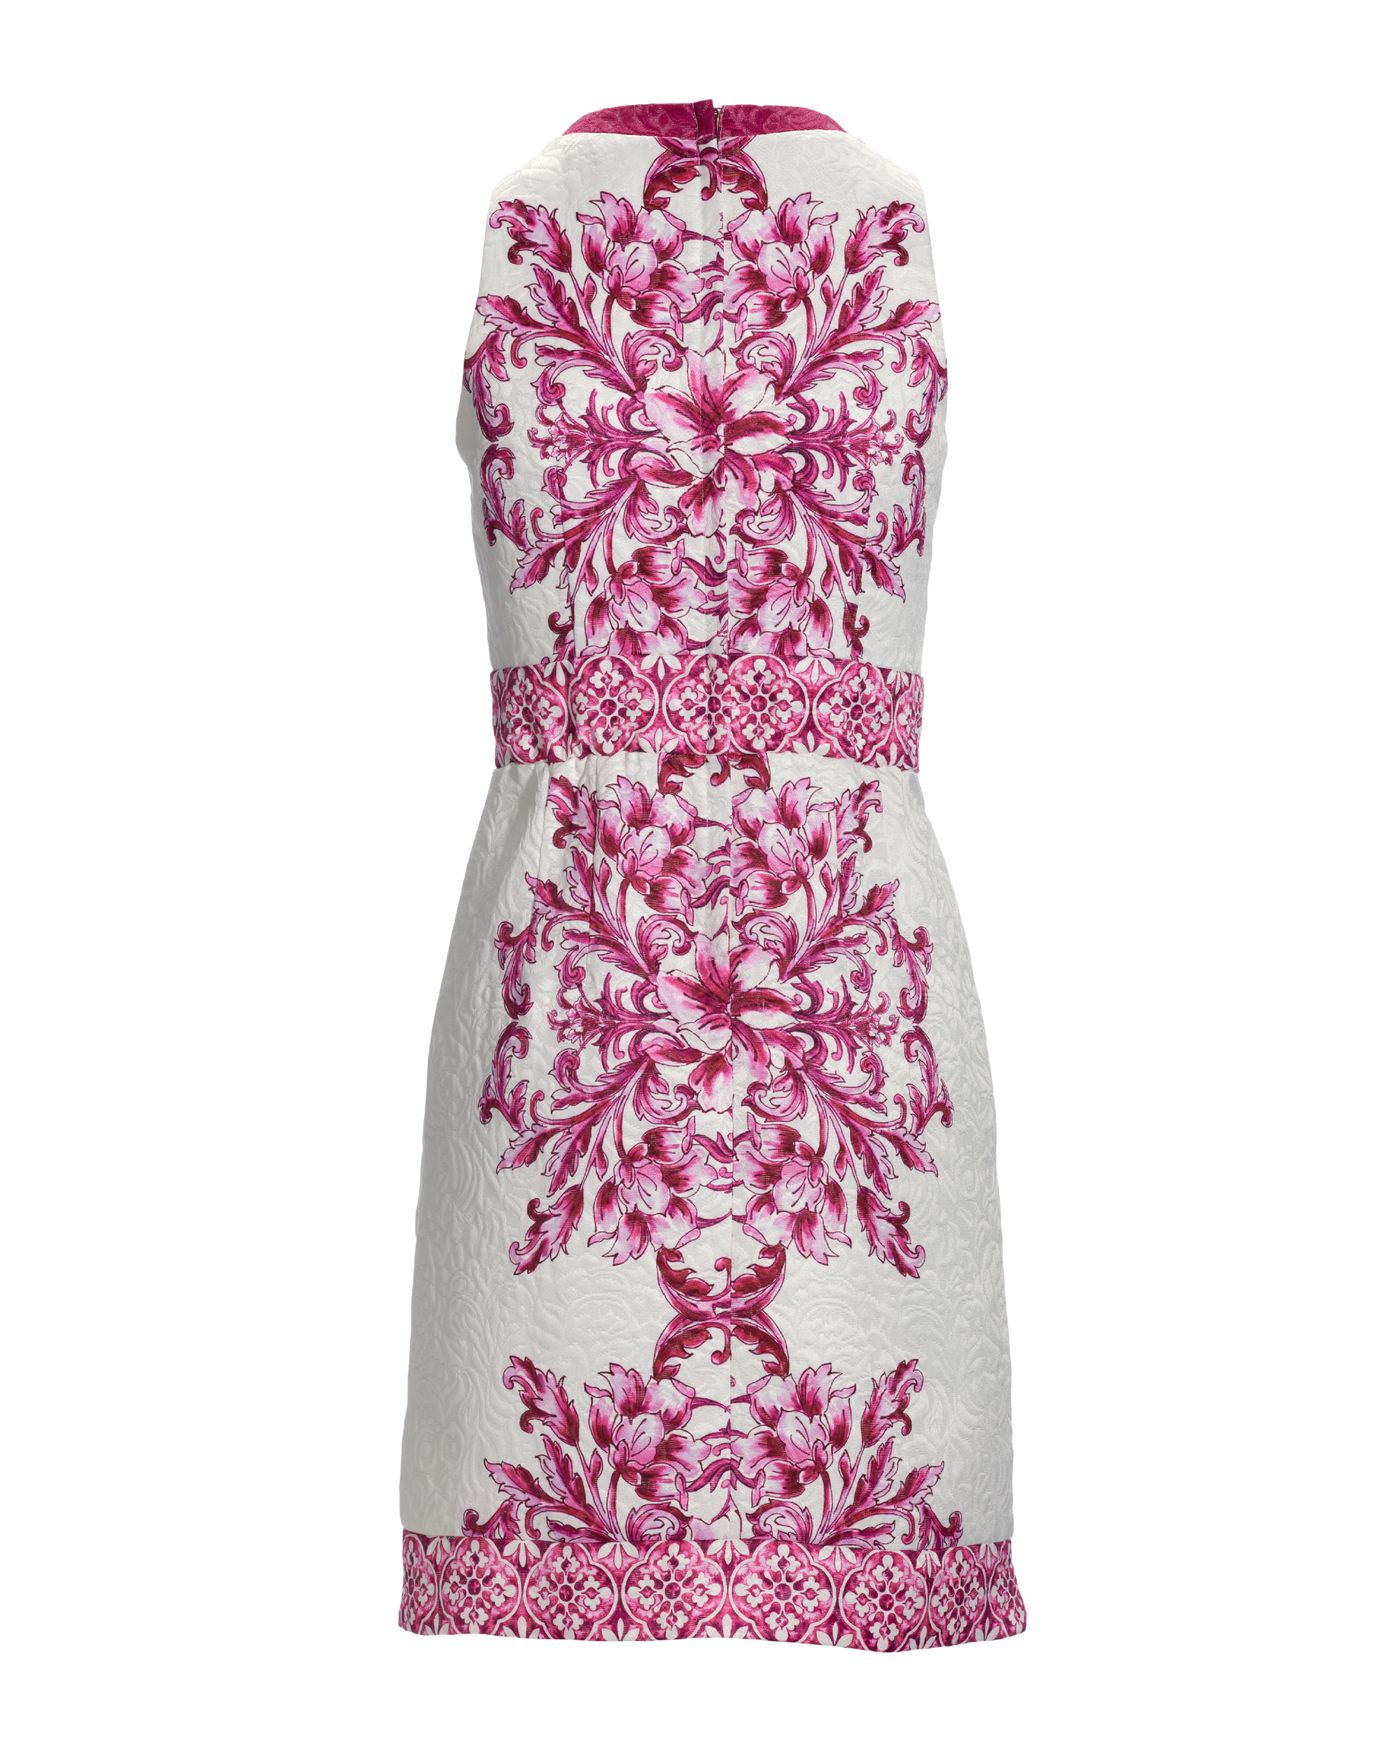 Tile Print Textured Jacquard Sheath Dress - Pink Multi | Boston Proper | Boston Proper